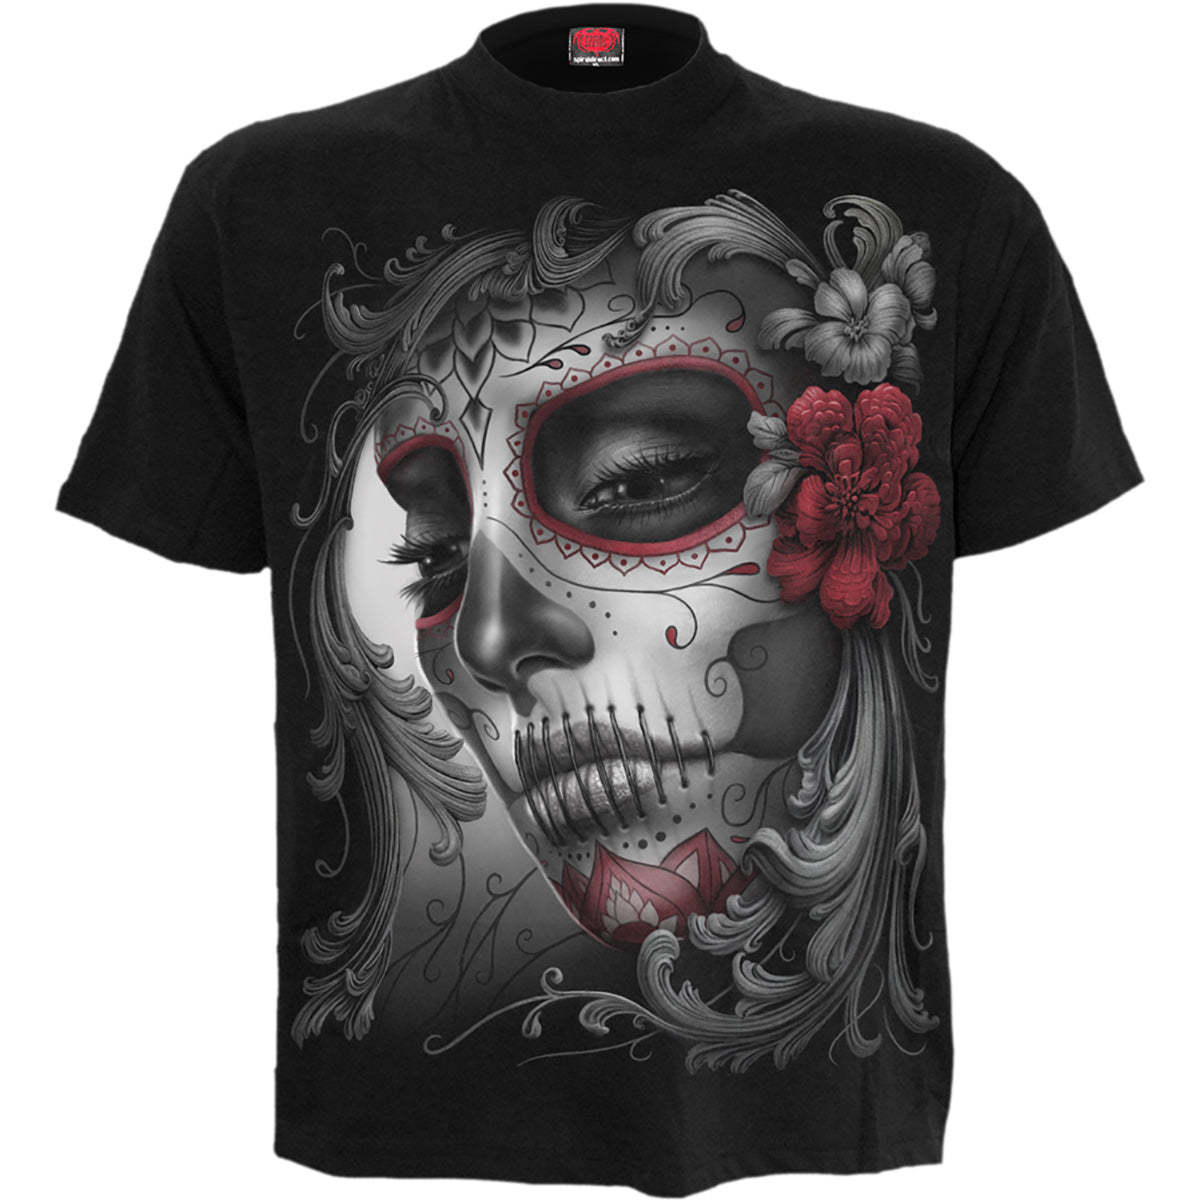 SKULL ROSES - Front Print T-Shirt Black